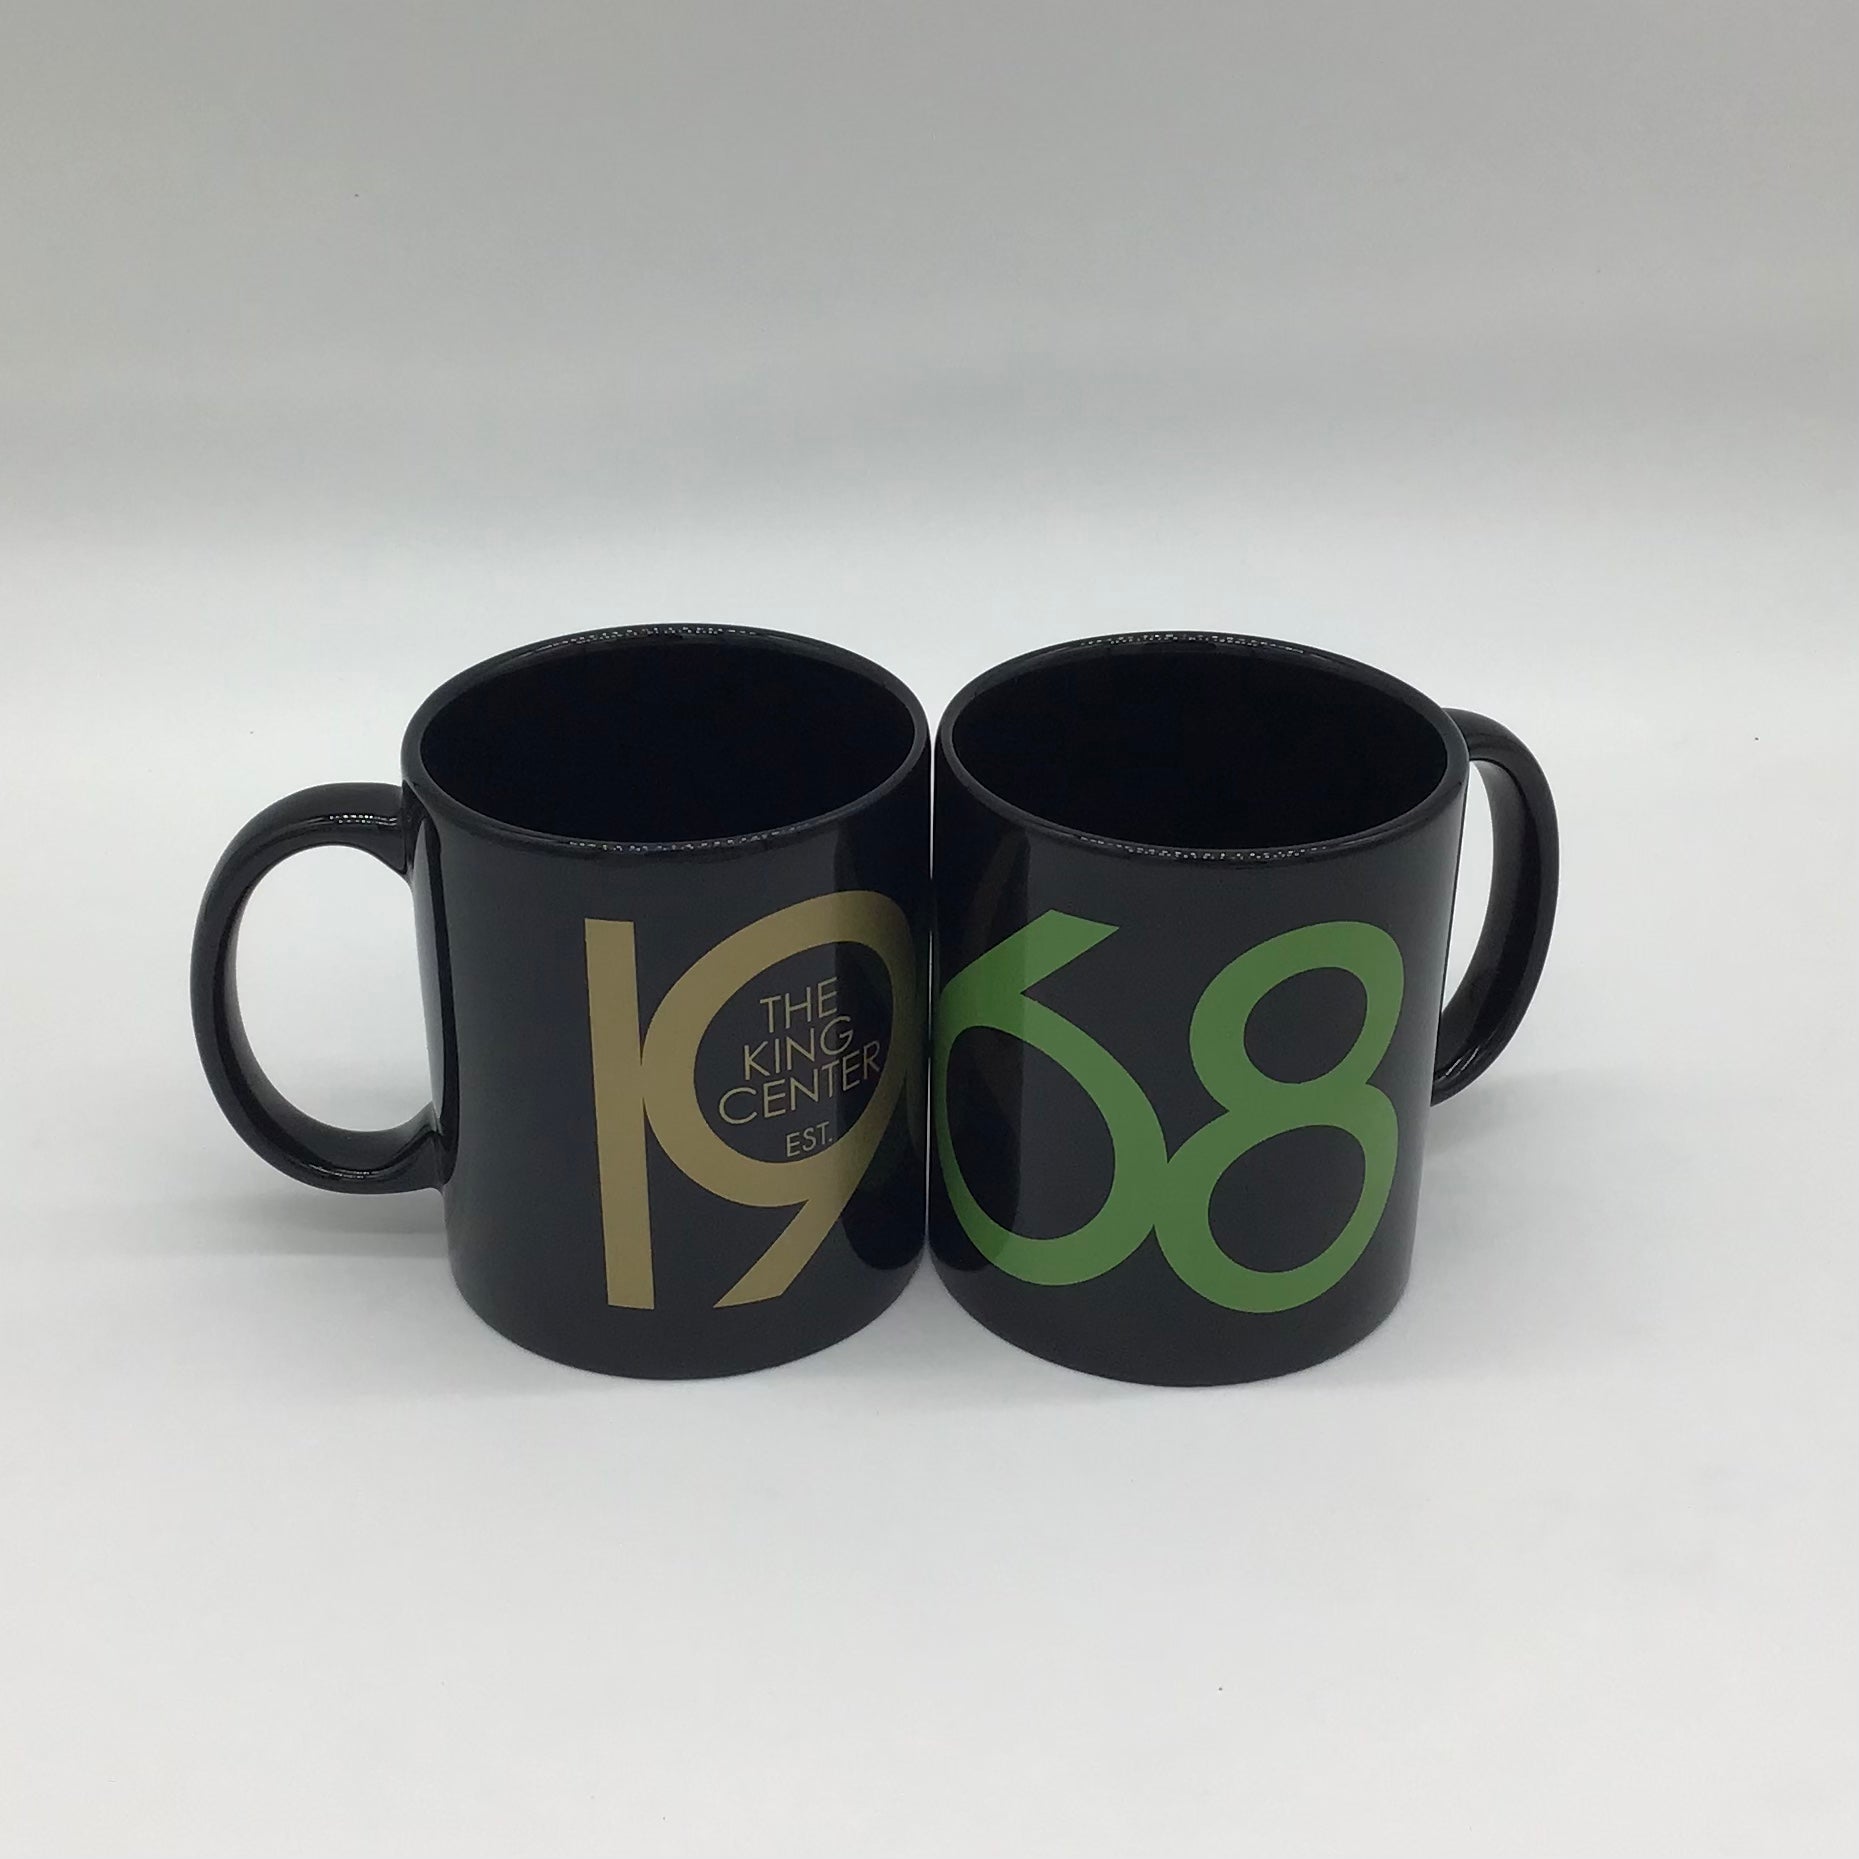 1968 Mug